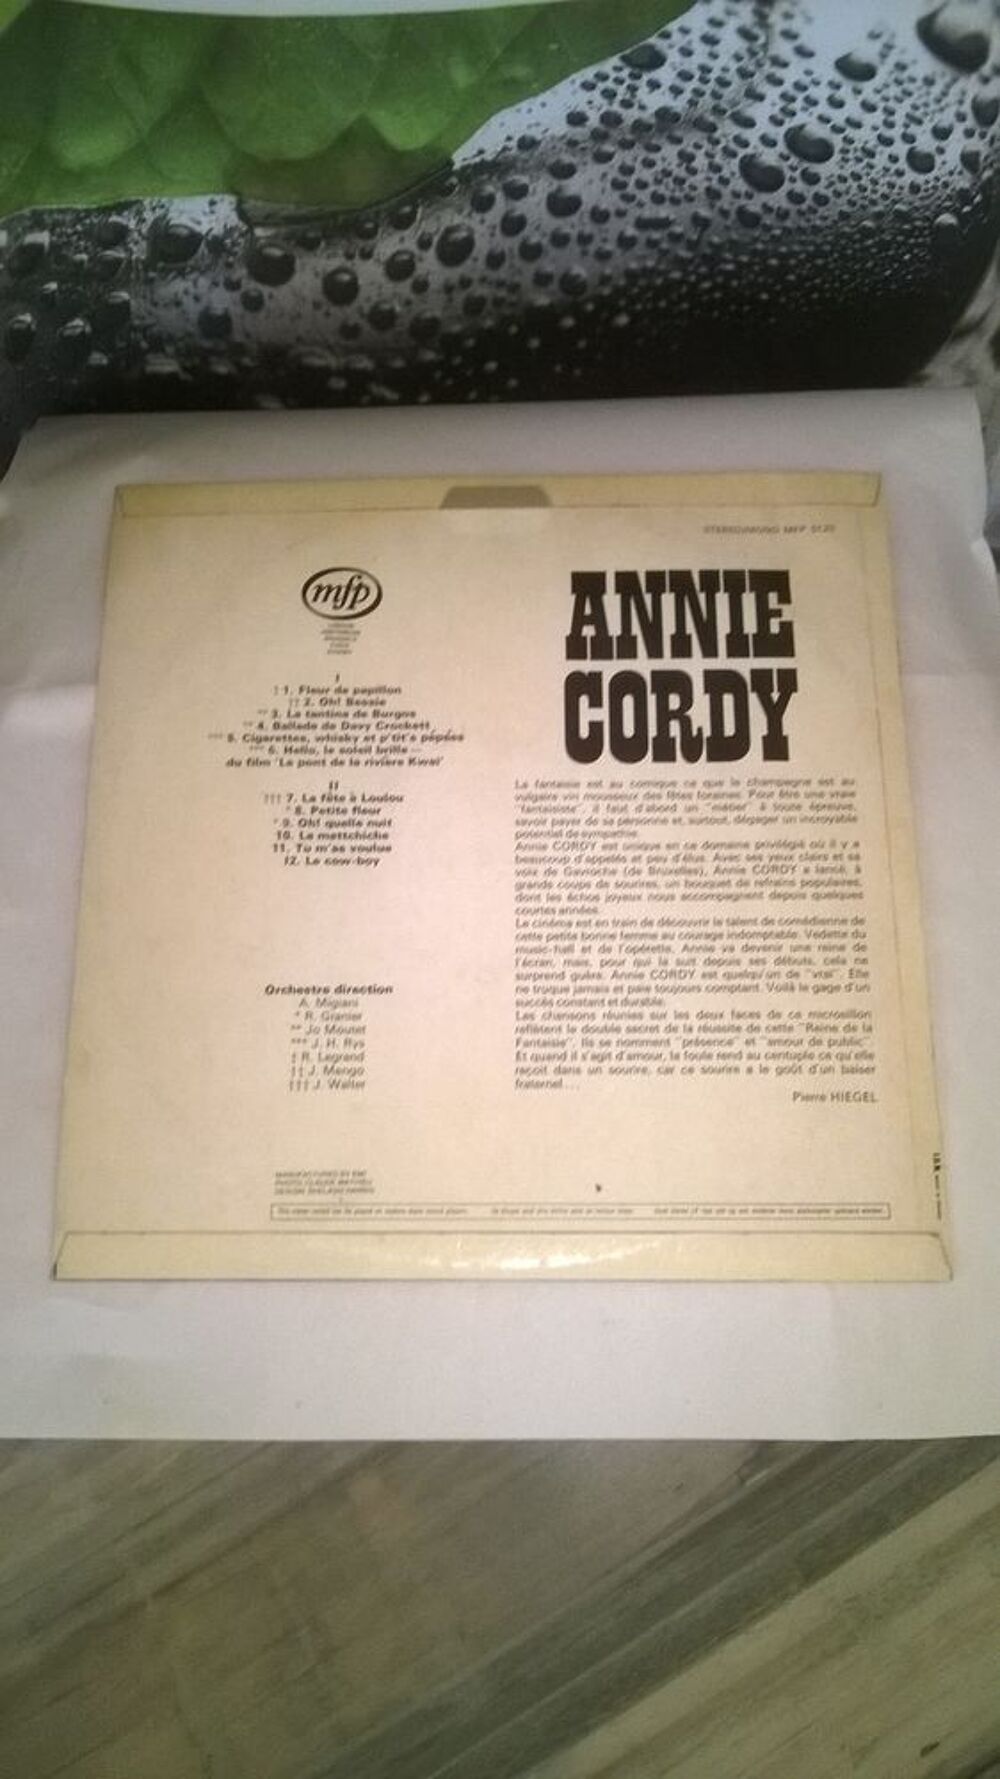 Vinyle Annie cordy
Excellent etat
Fleur de papillon
Oh Bes CD et vinyles